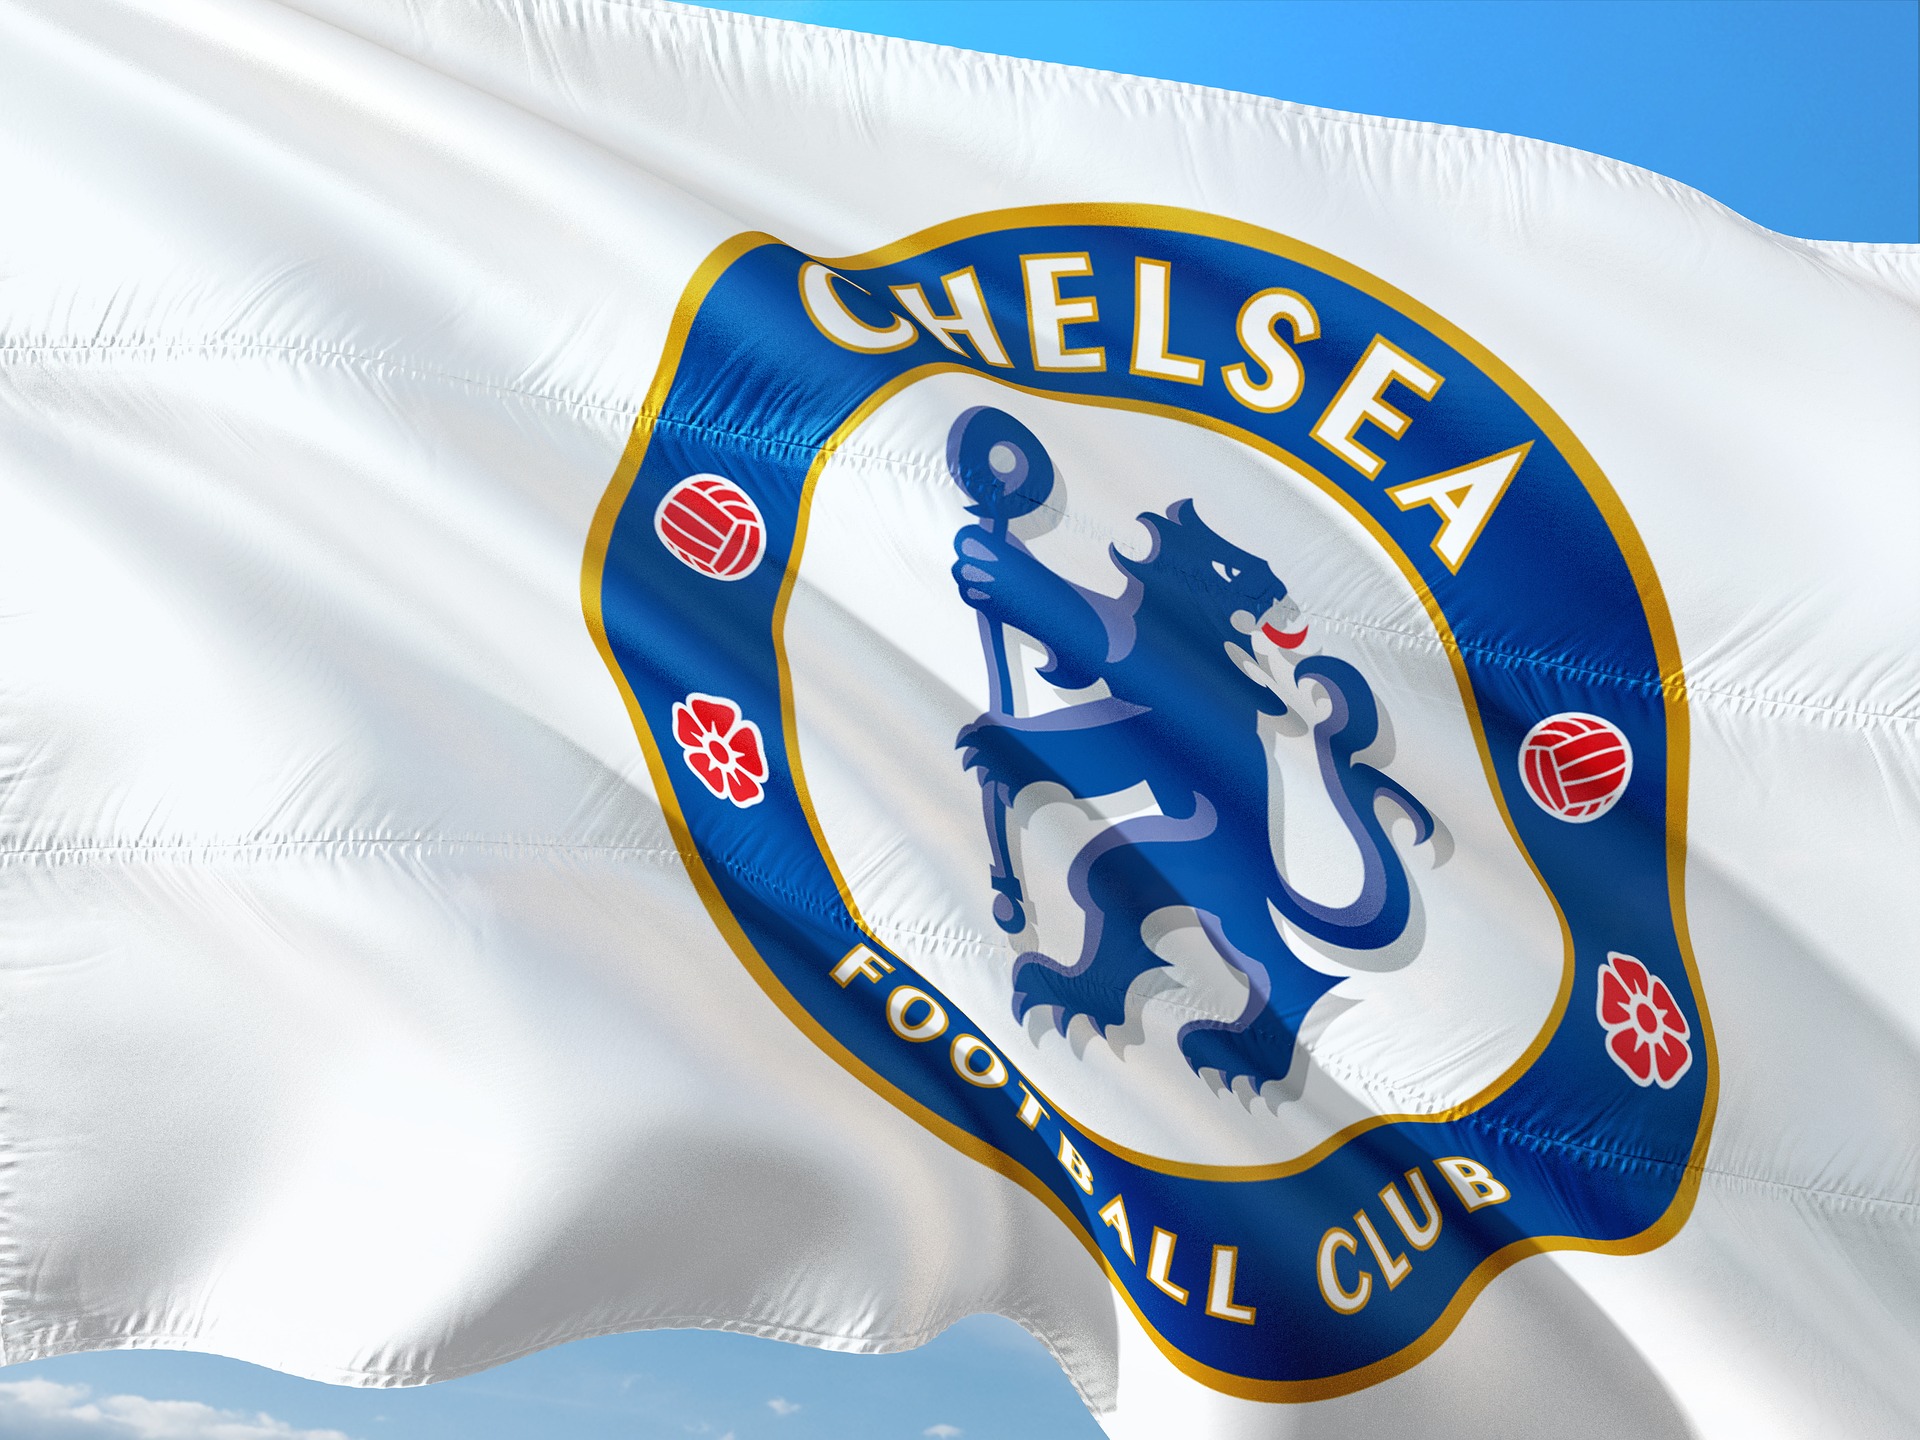 Chelsea z Londynu osiągnęła awans do spotkania finałowego zmagań Pucharu Ligi Angielskiej!